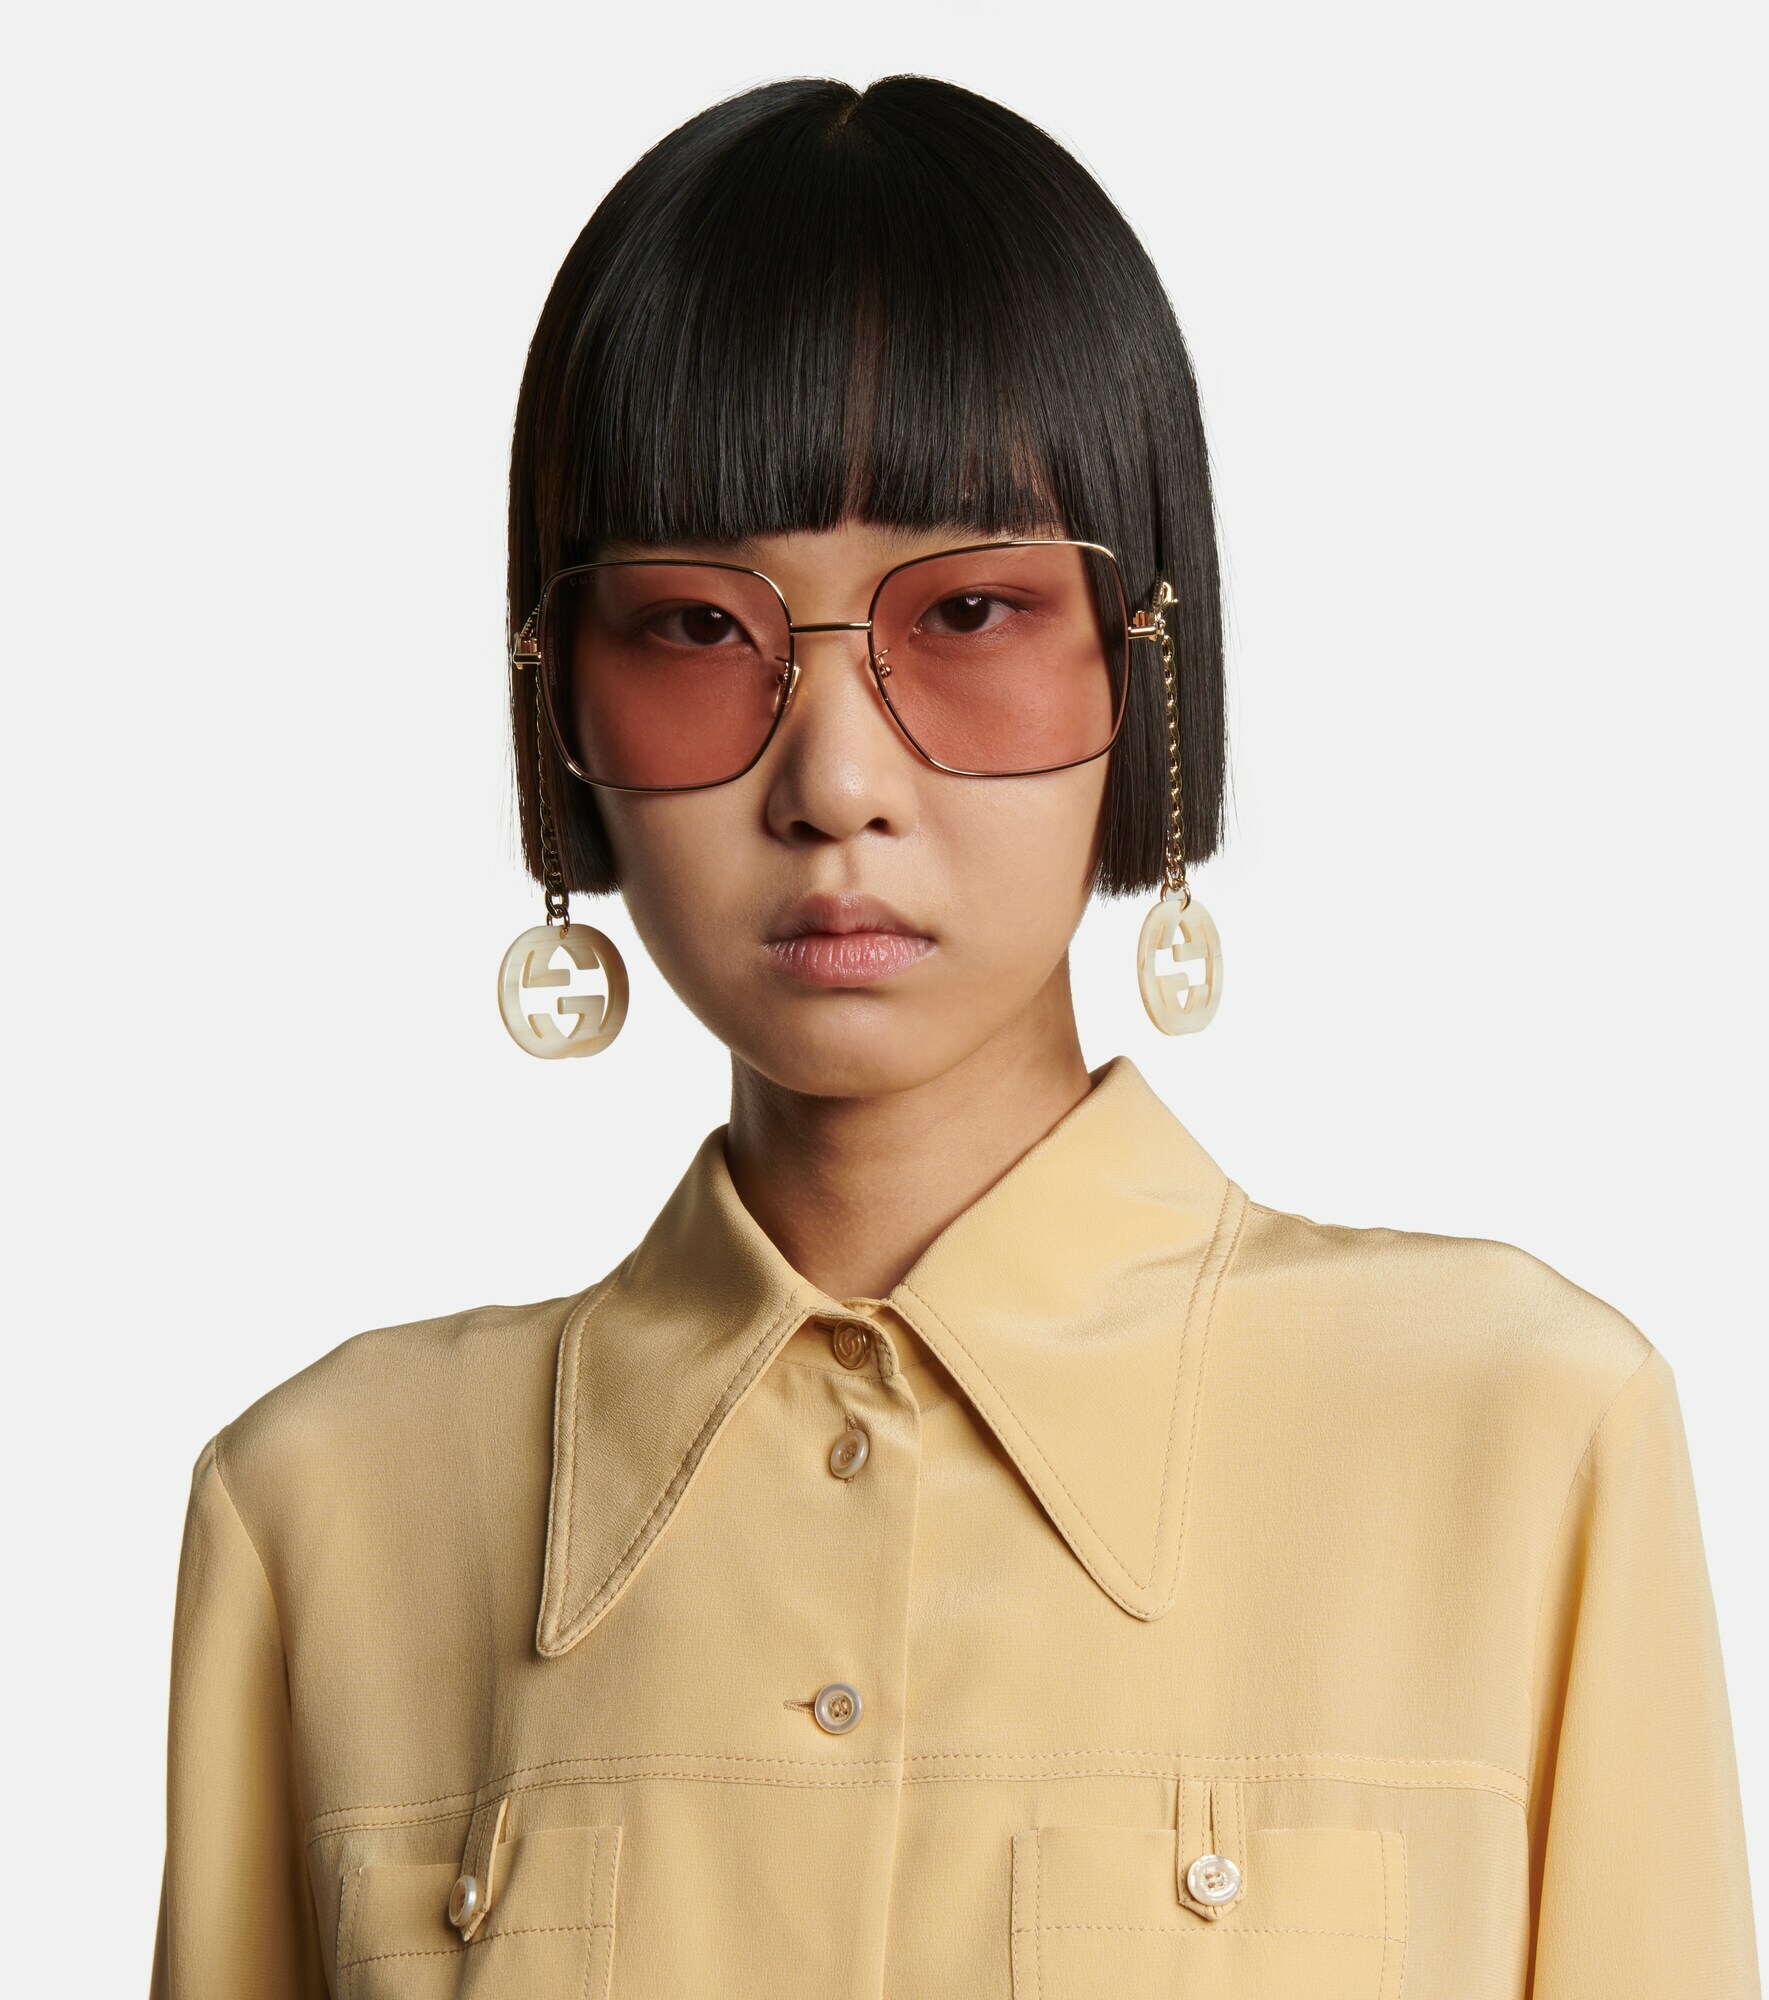 Gucci - Chain-trimmed square sunglasses Gucci